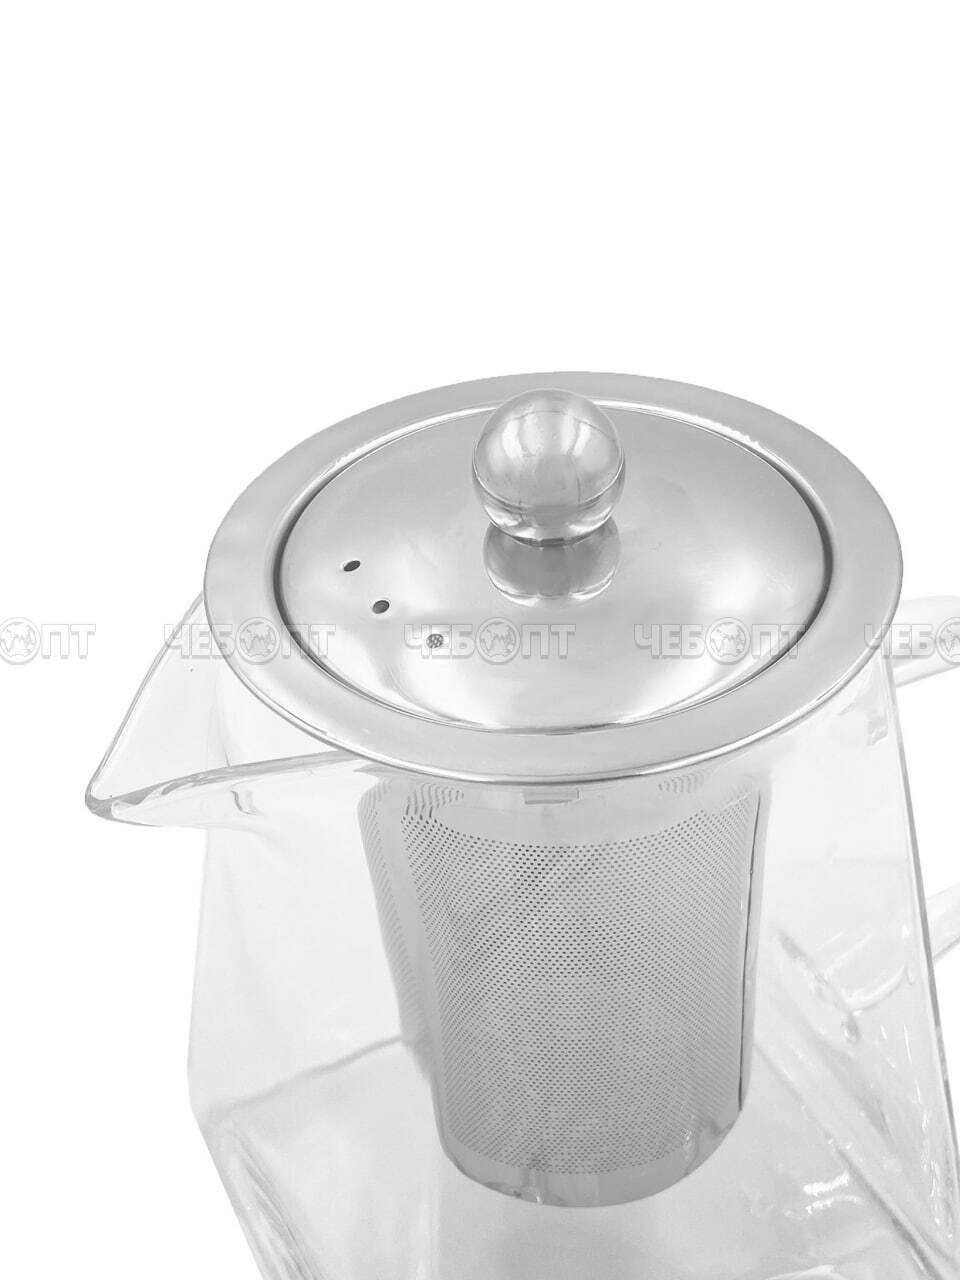 Чайник заварочный 750 мл КВАДРАТНЫЙ с металлическим ситечком, металлической крышкой, жаропрочное стекло арт. 260144. $ [60] GOODSEE. ЧЕБОПТ.